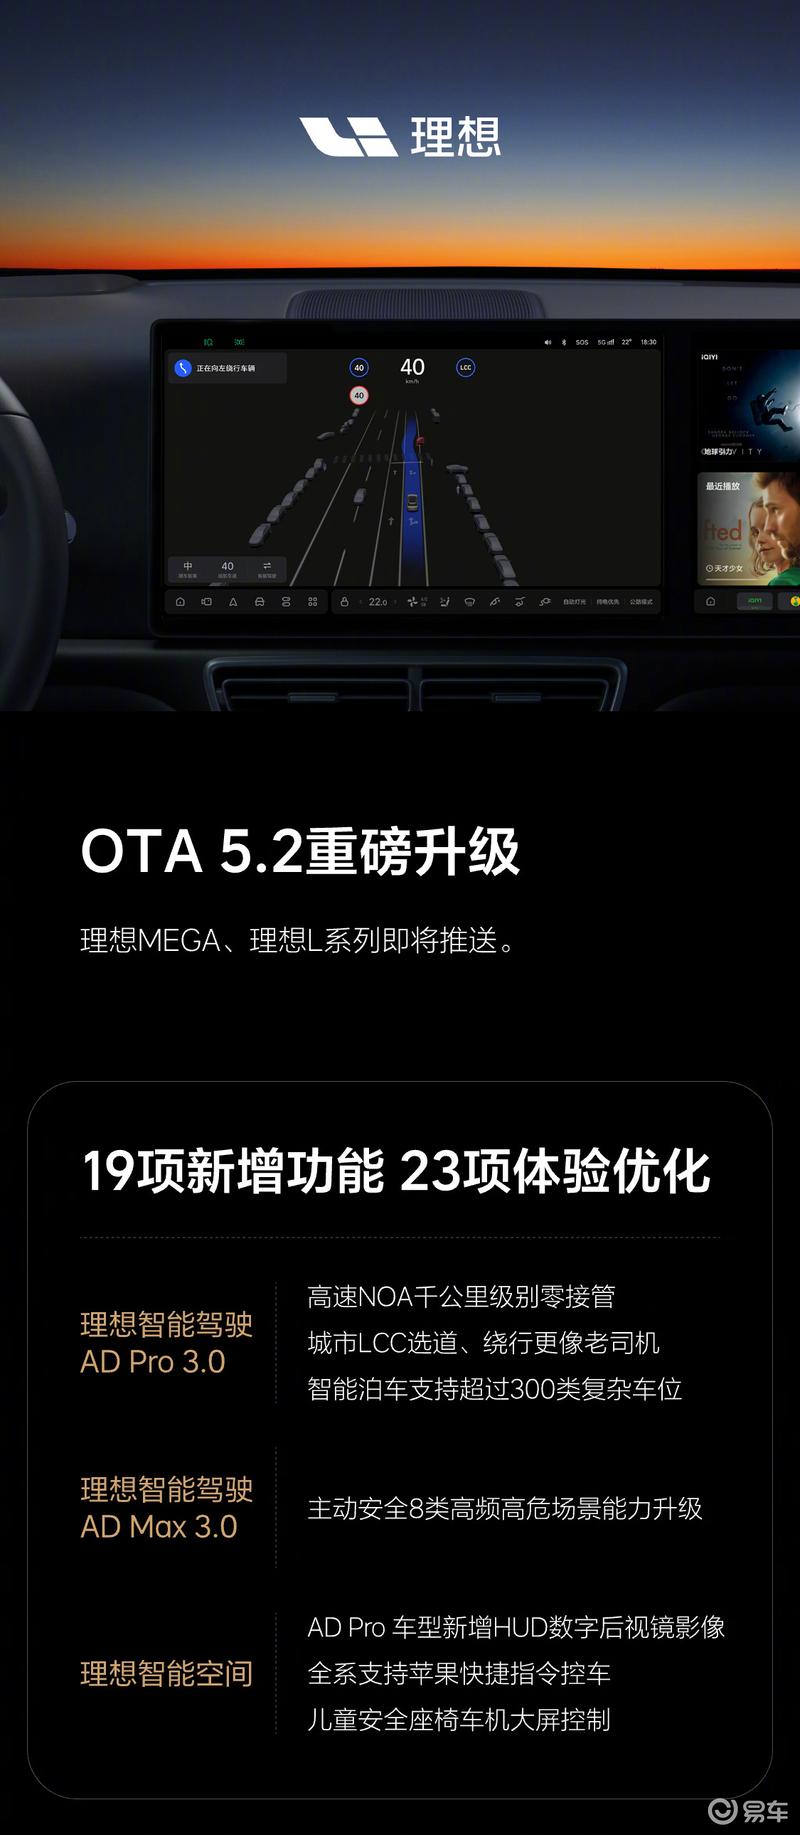 理想汽车正式推送OTA 5.2 新增19项功能/优化23项体验插图